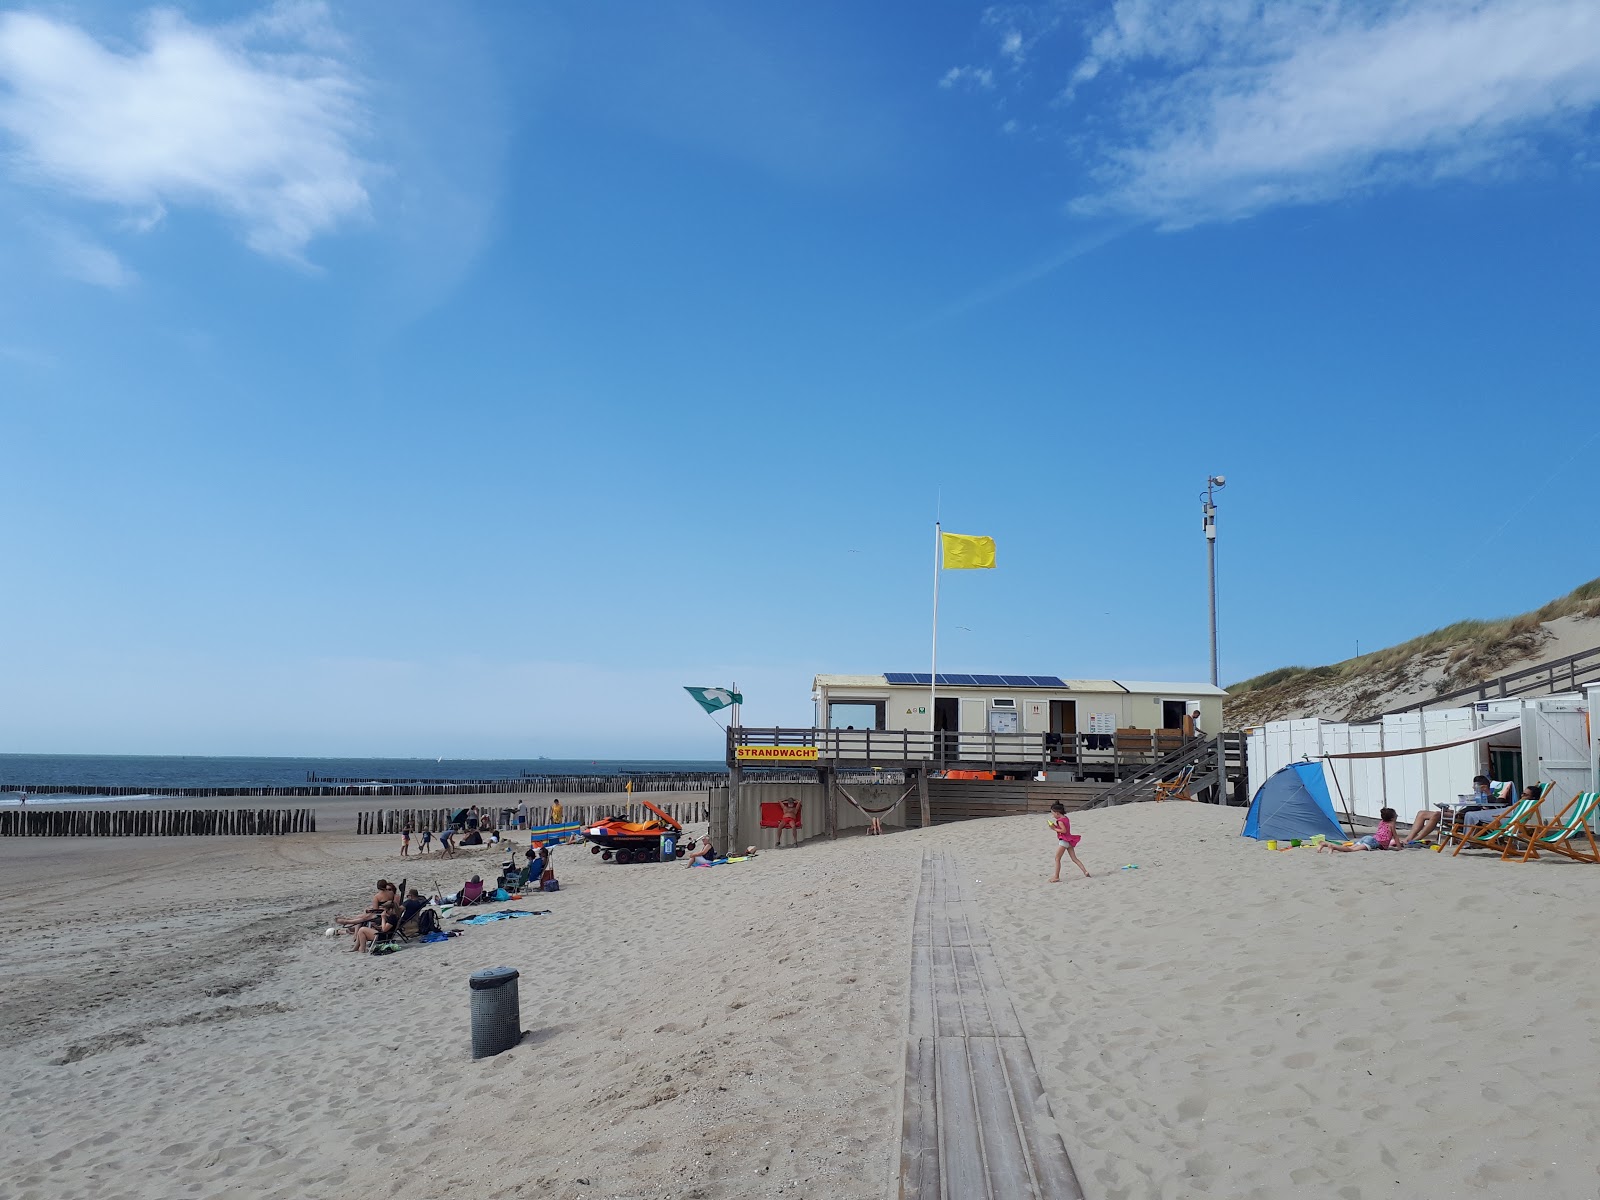 Joossesweg beach'in fotoğrafı - rahatlamayı sevenler arasında popüler bir yer